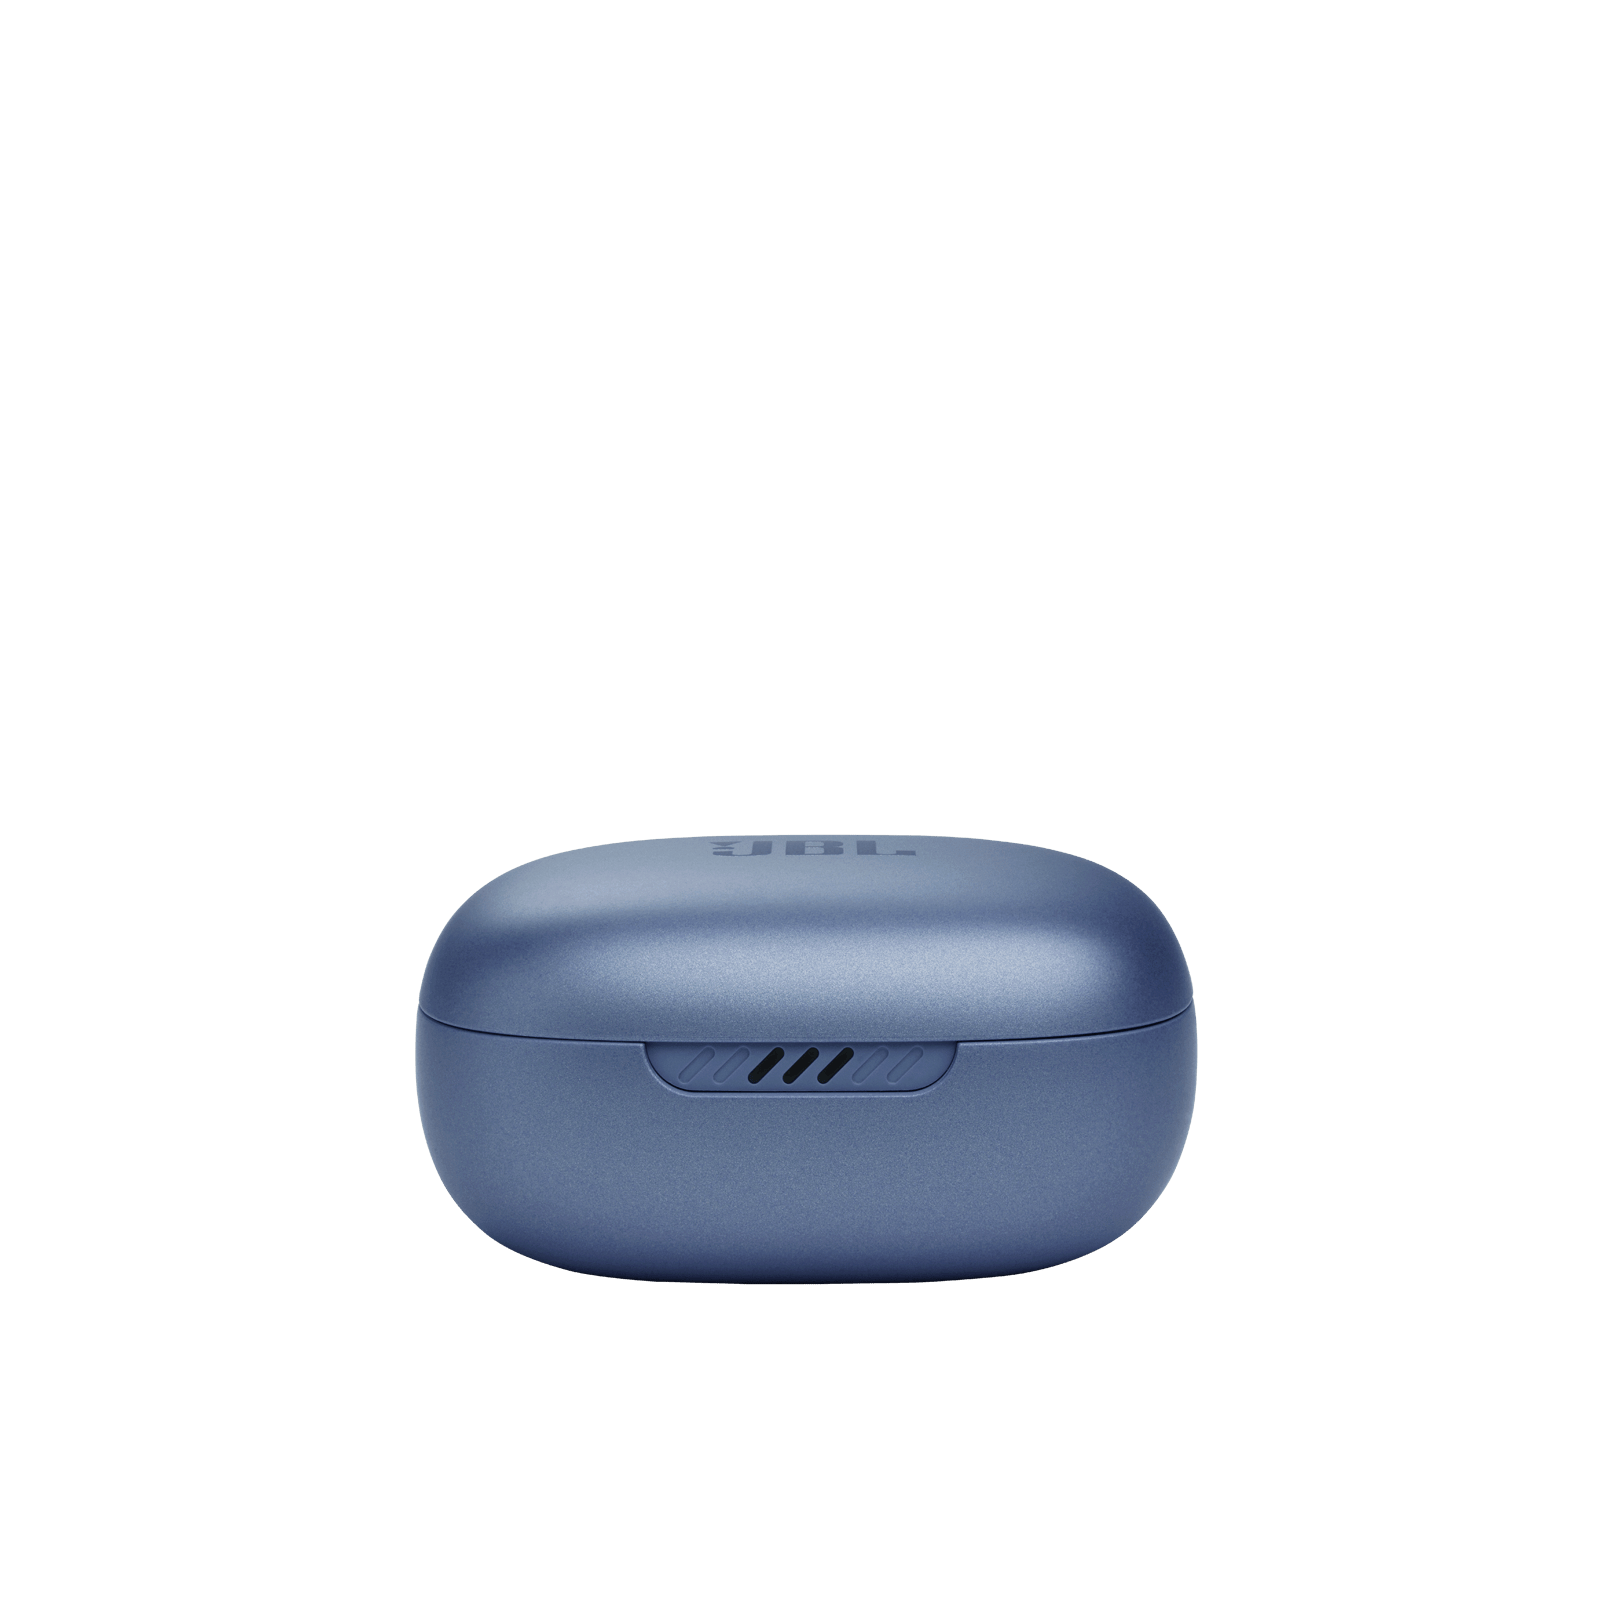 אוזניות אלחוטיות   TW  JBL Live PRO-2 - כחול